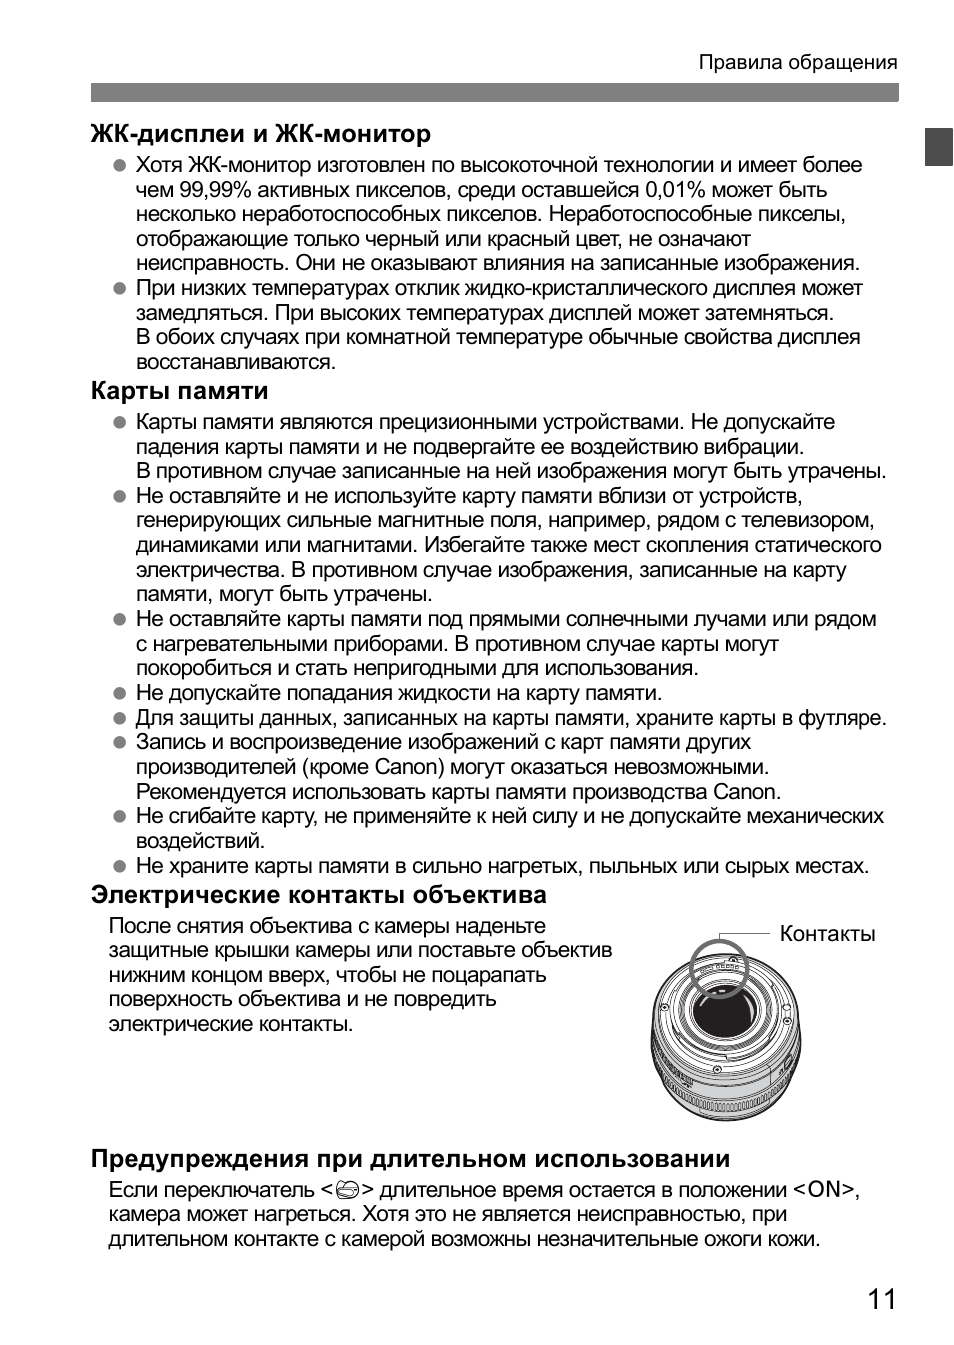 Инструкция по эксплуатации Canon EOS 1D Mark II N | Страница 11 / 196